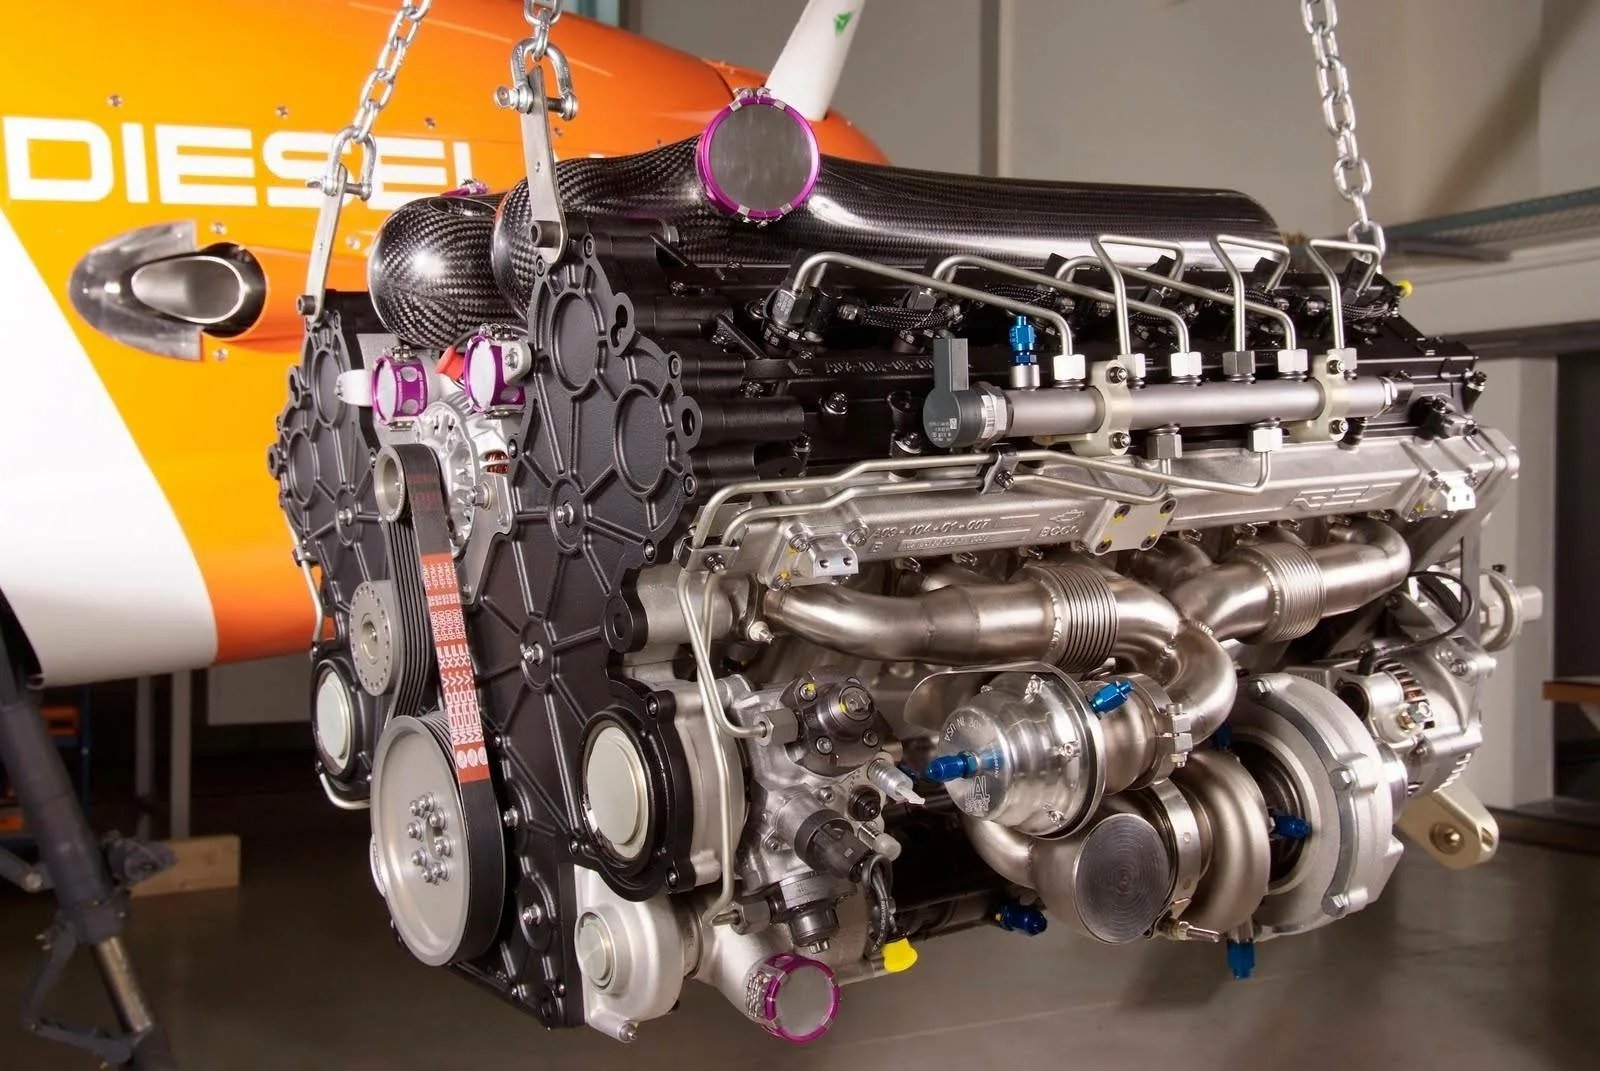 Обзор двигателей автомобилей. Двигатель Red a03 v12. Red a03 авиационный двигатель. Perkins CV двигатель v12. Дизельный двигатель внутреннего сгорания.